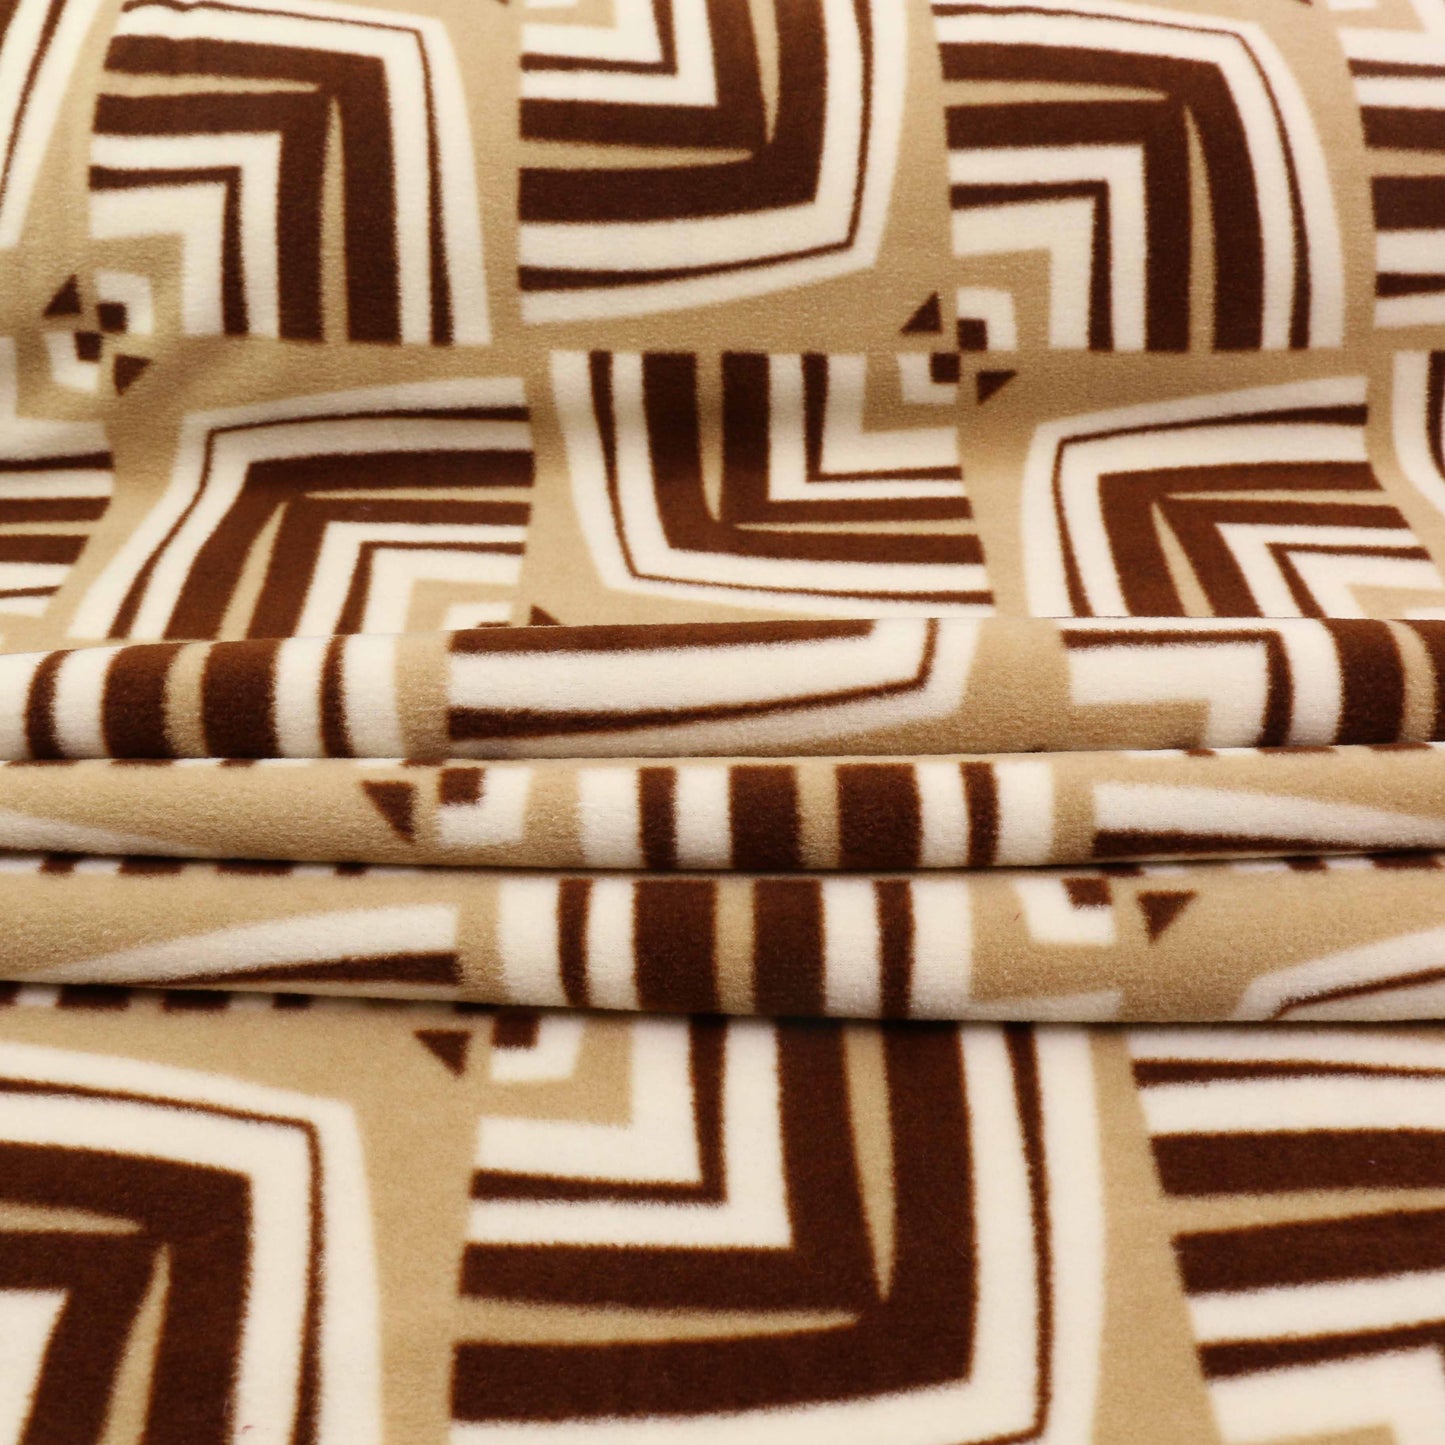 Fleece Fabric - Brown, beige